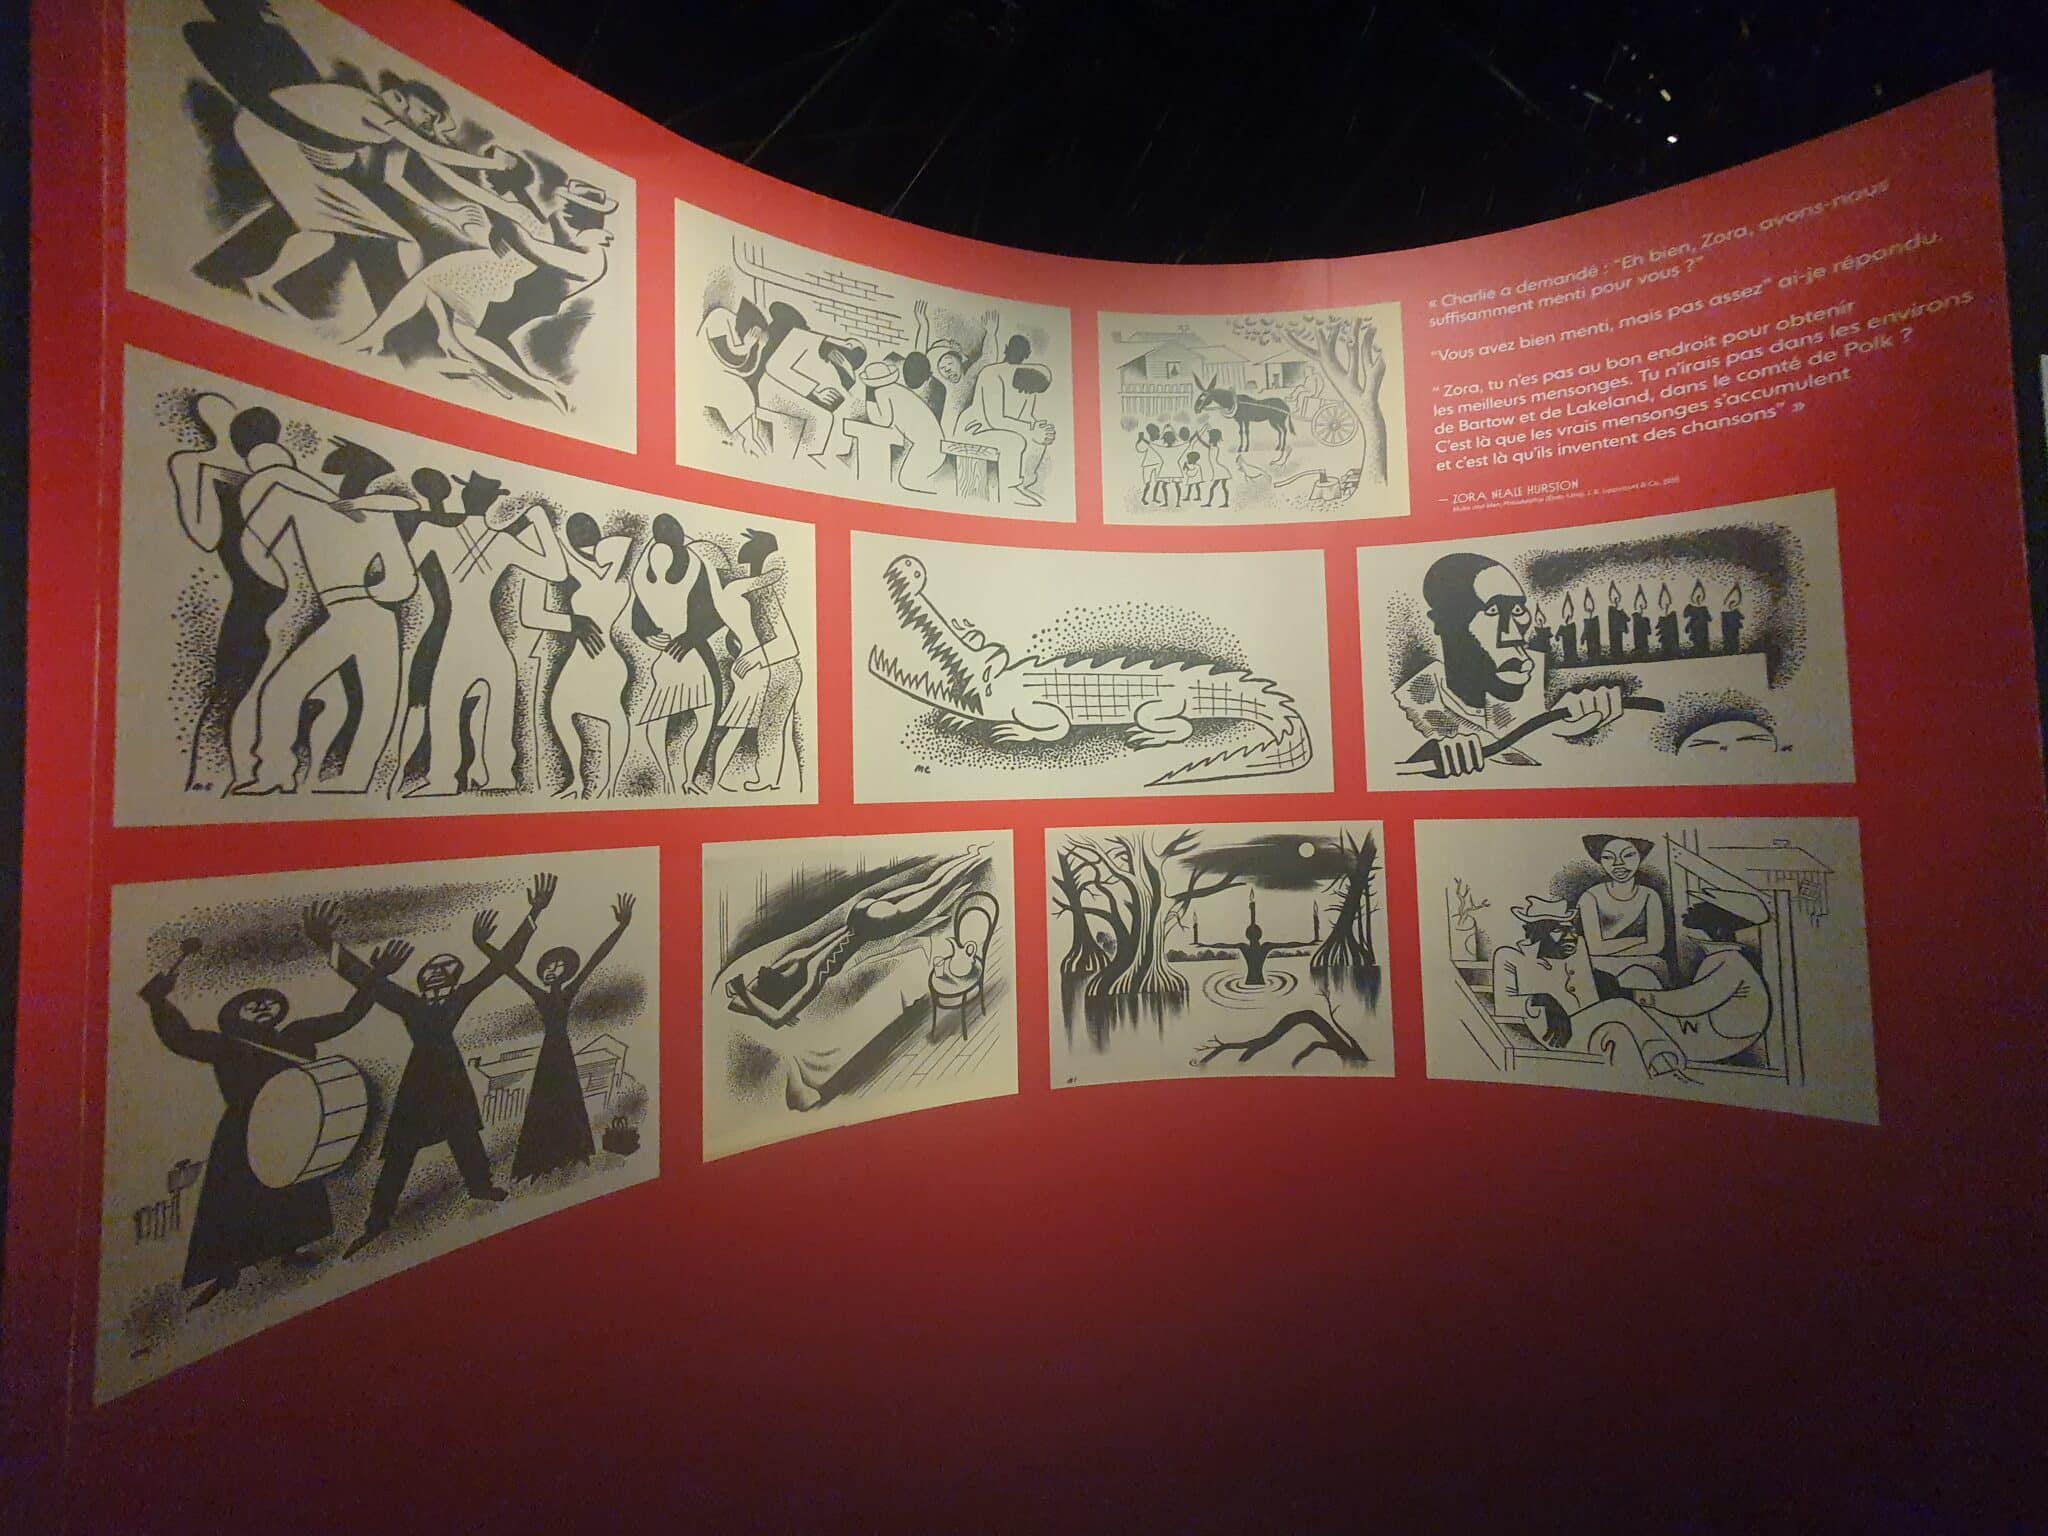 Dessins, exposition "Déborder l'anthropologie", Musée du Quai Branly, Paris